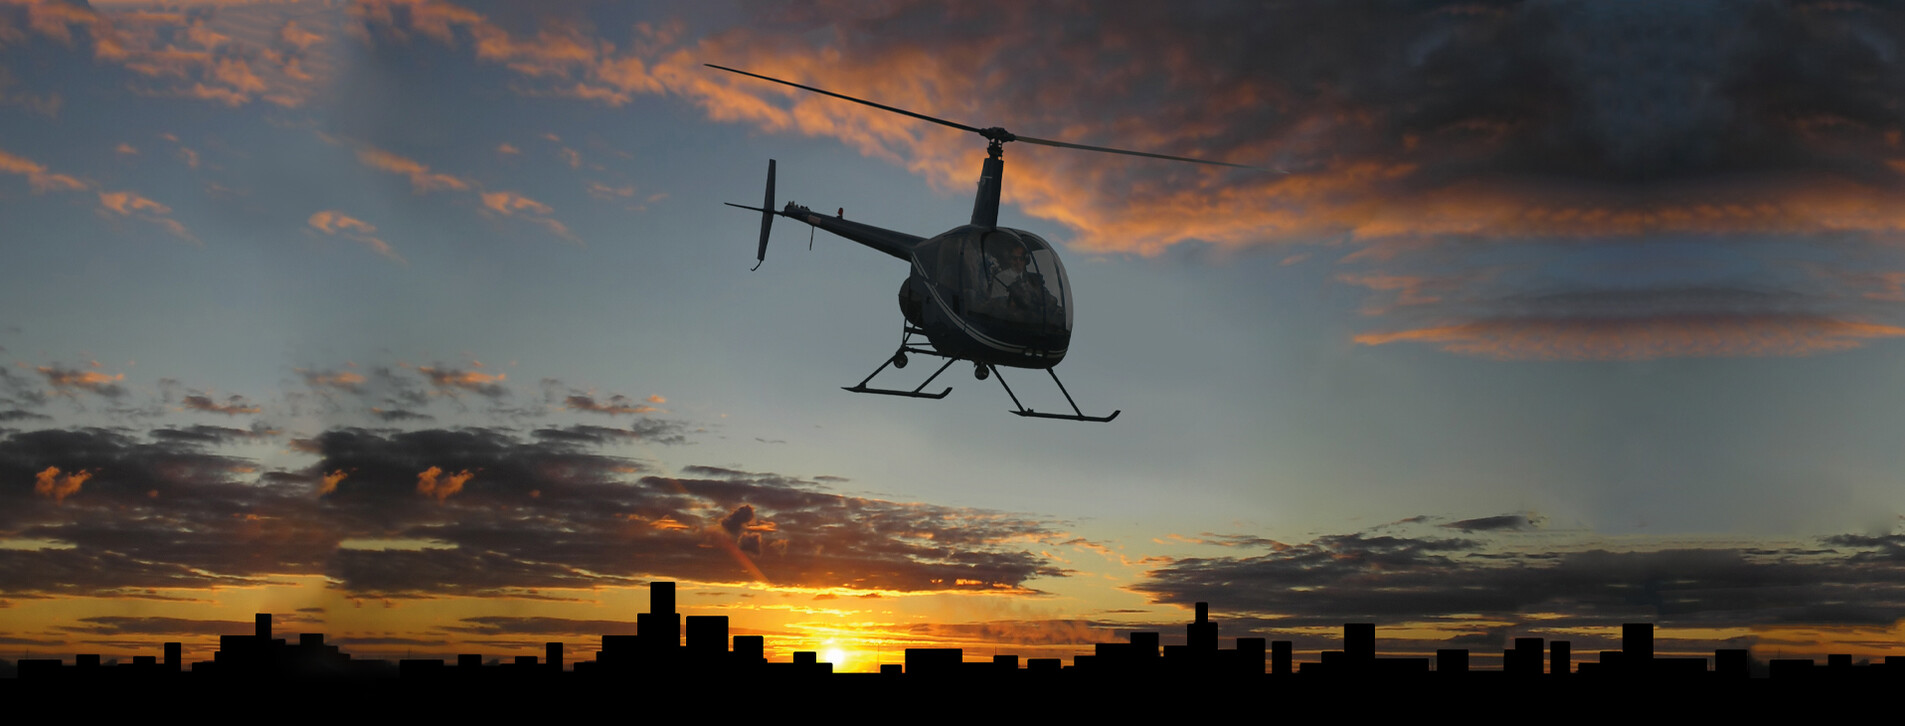 Фото 1 - Політ на вертольоті Robinson R22 над нічним Києвом